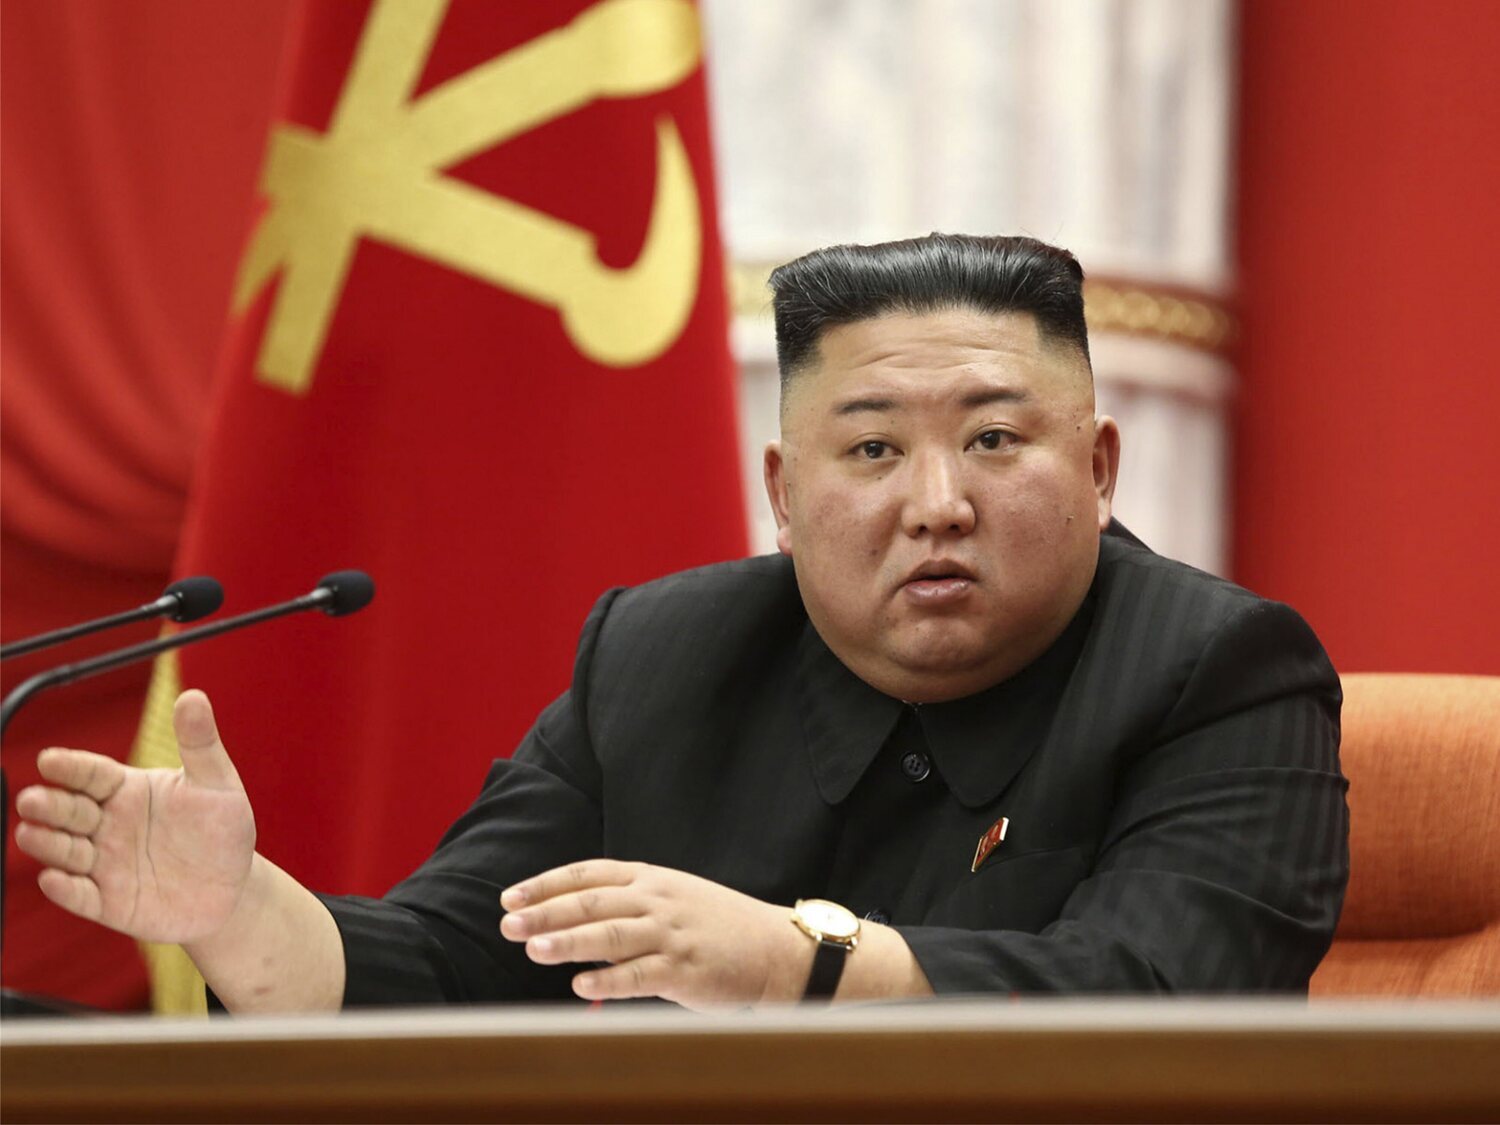 Corea del Norte reconoce su primer brote de coronavirus y declara el estado de emergencia nacional "más grave"